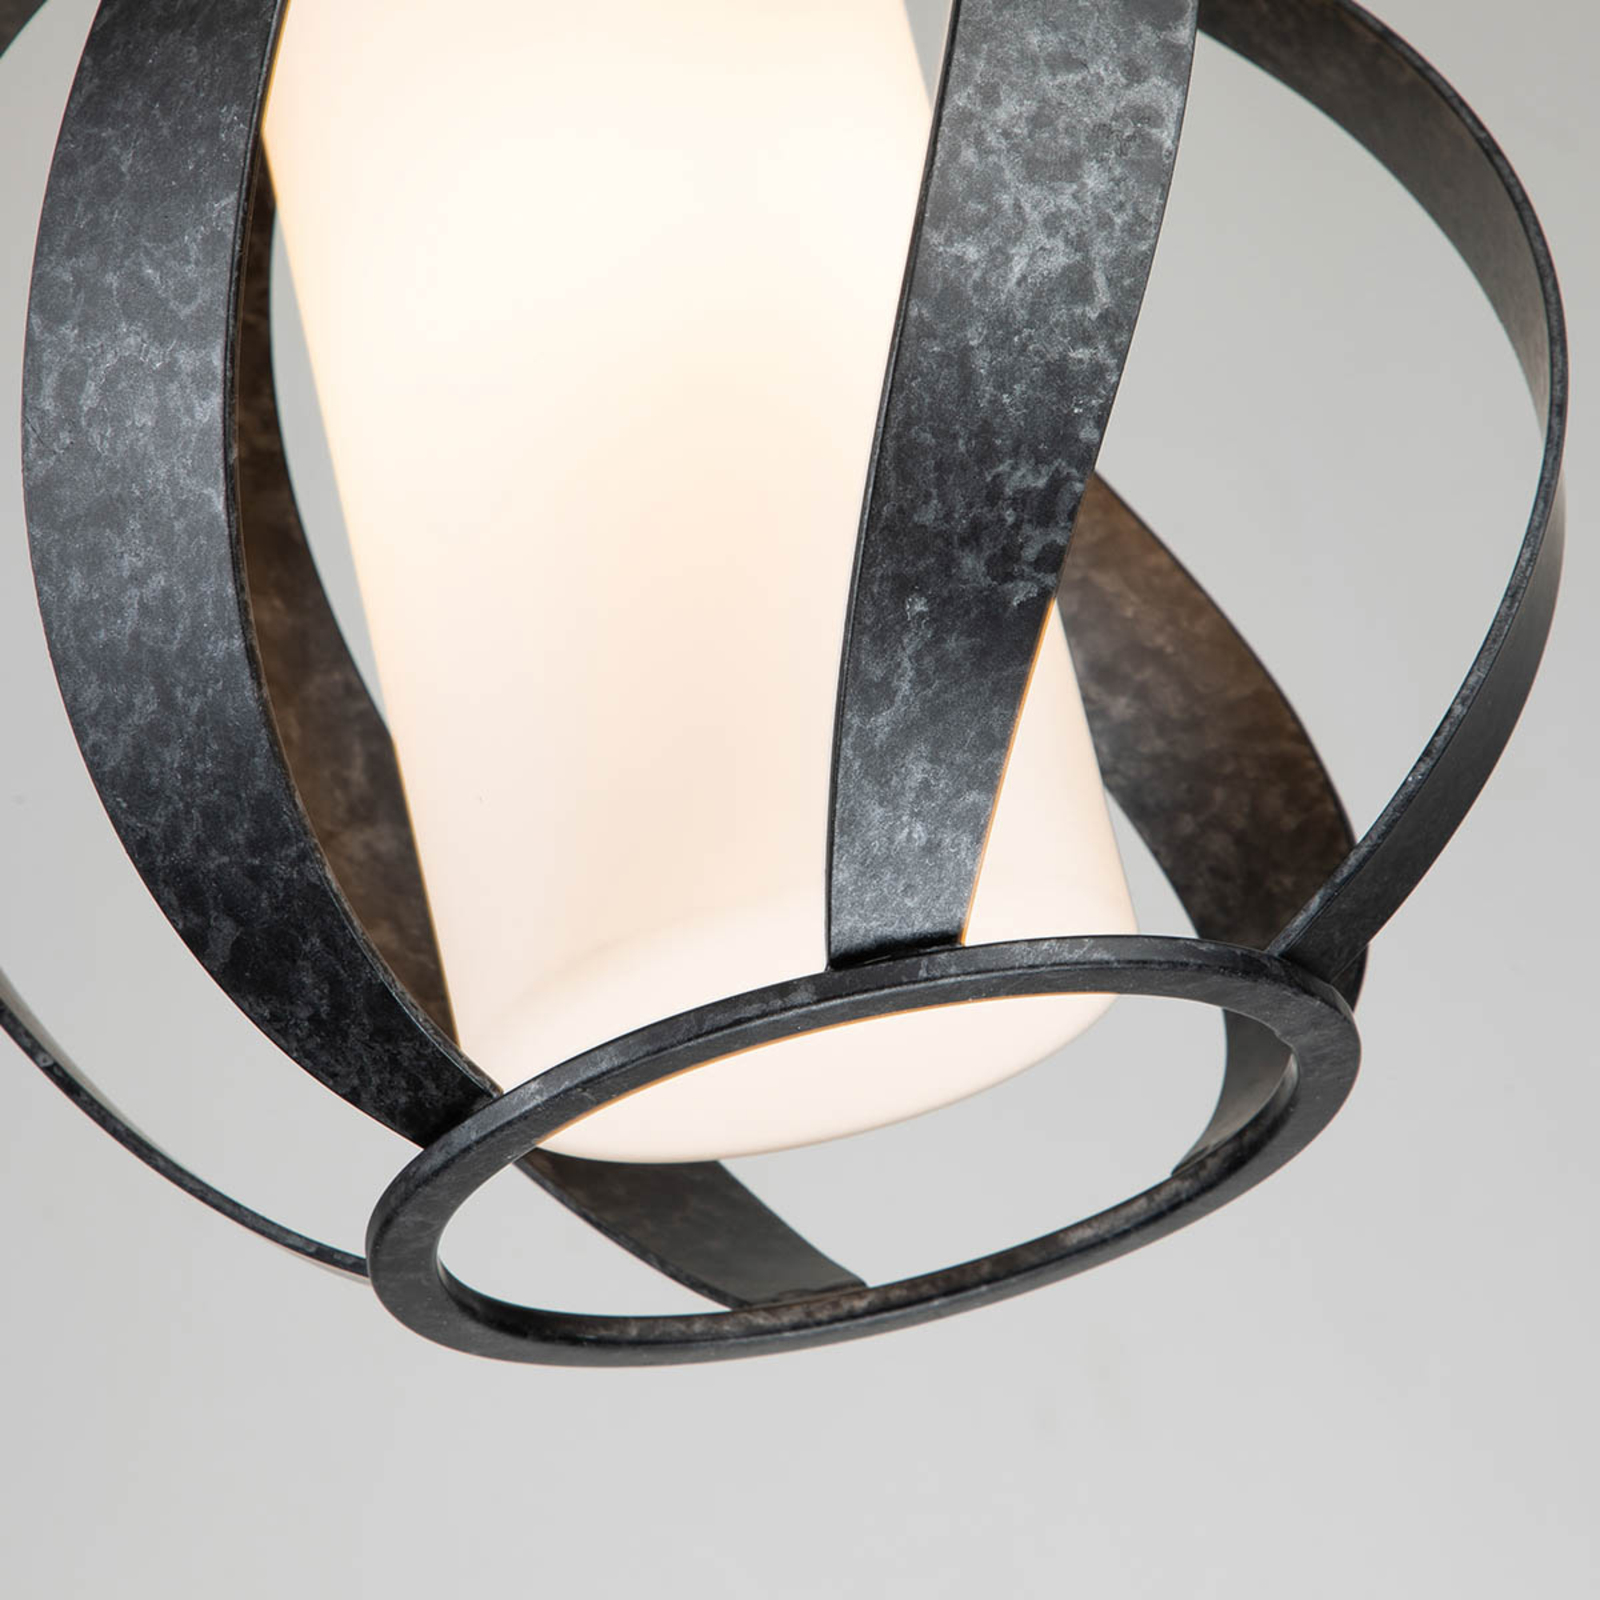 Hanglamp Blacksmith zwart/wit 1-lamp Ø25,4